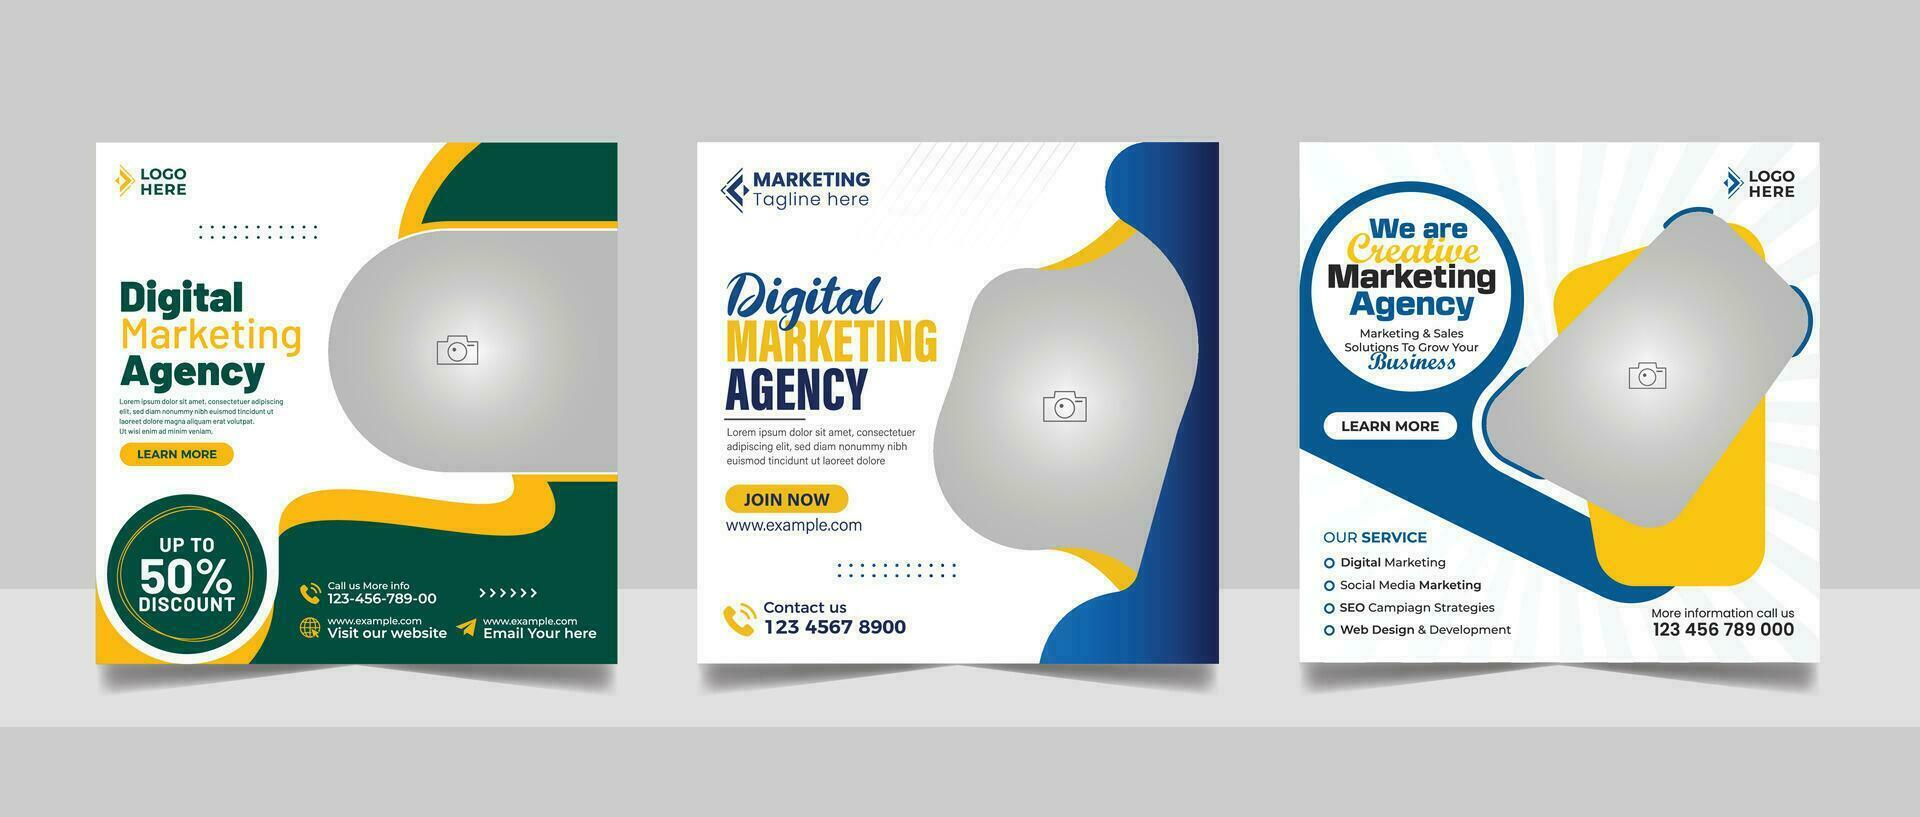 digital márketing agencia en línea seminario web social medios de comunicación enviar colocar, corporativo negocio promoción web bandera, cuadrado volantes diseño modelo vector